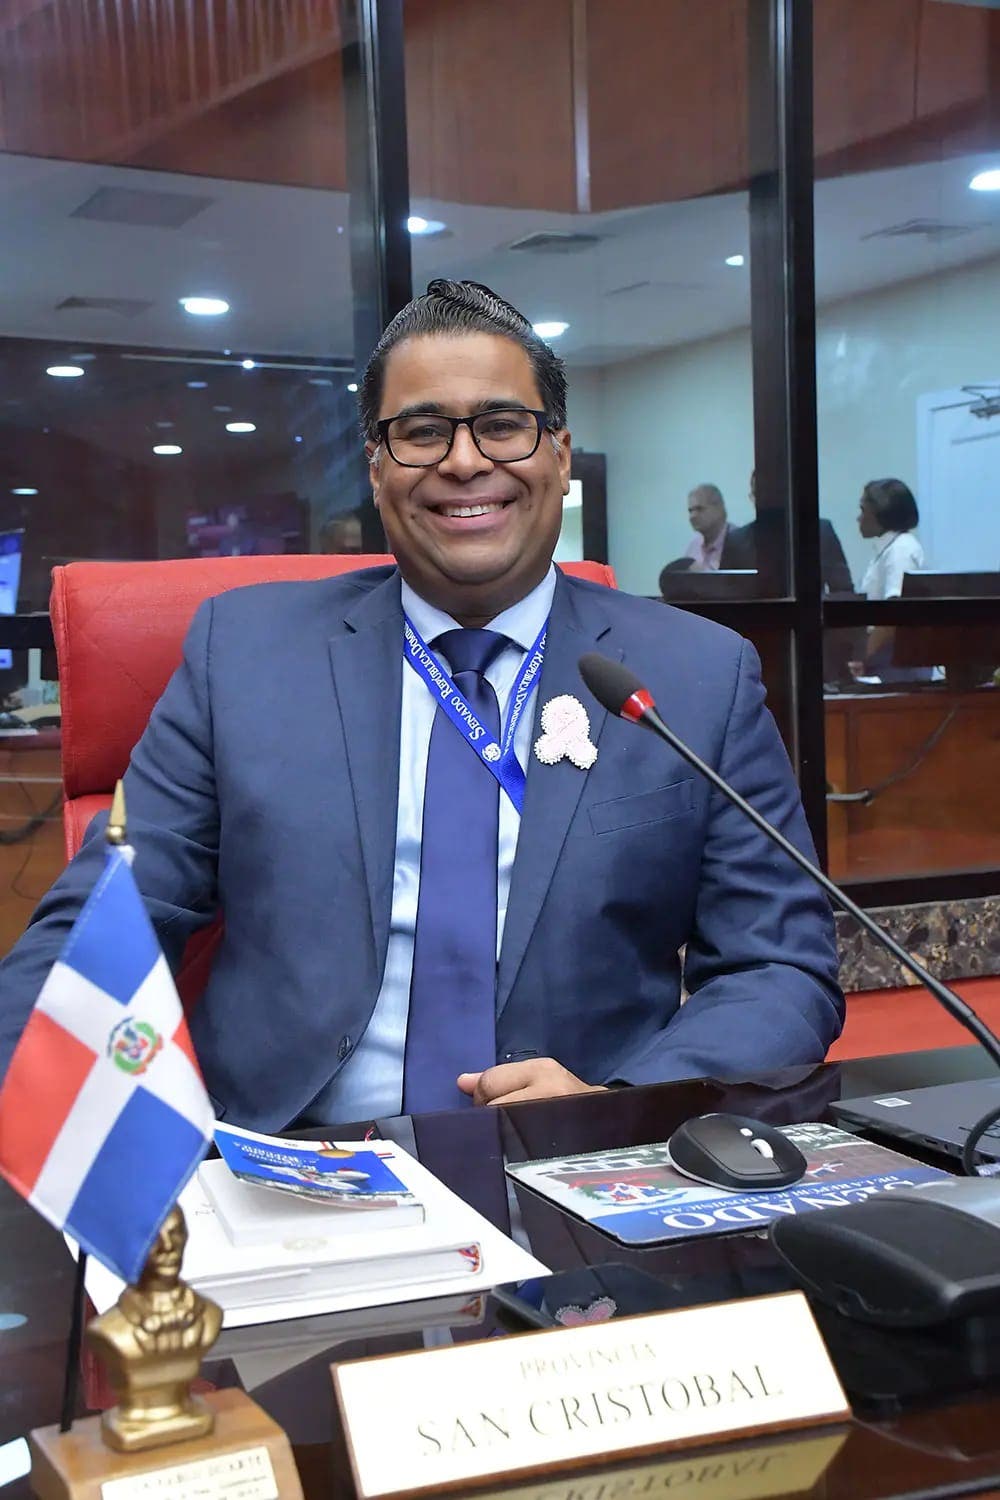 Franklin Rodríguez senador de San Cristóbal aspira a dirigir la alcaldía del DN